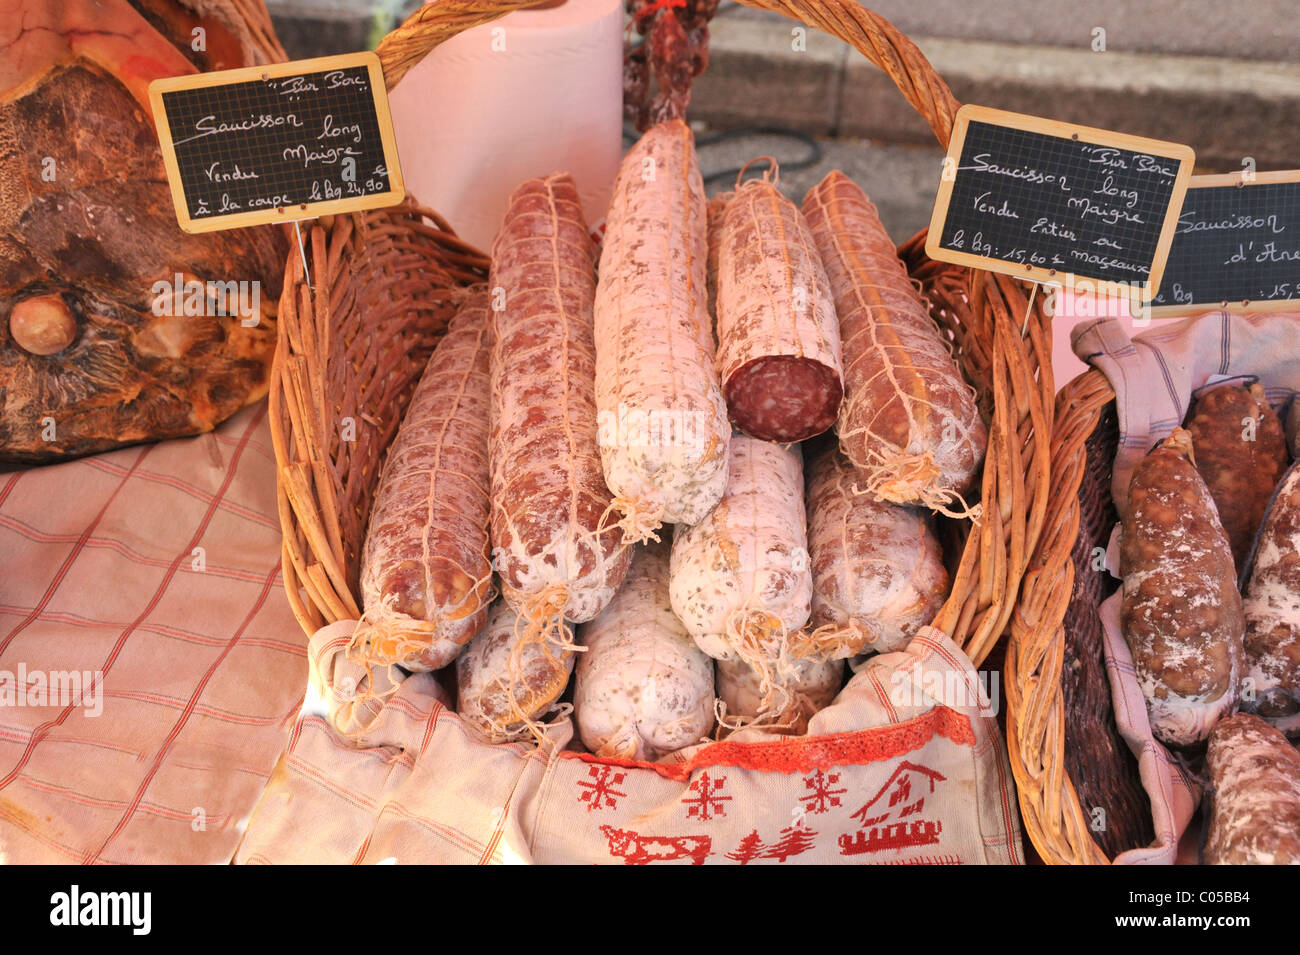 Salami-Würste zu verkaufen - Straßenmarkt in Frankreich. Stockfoto